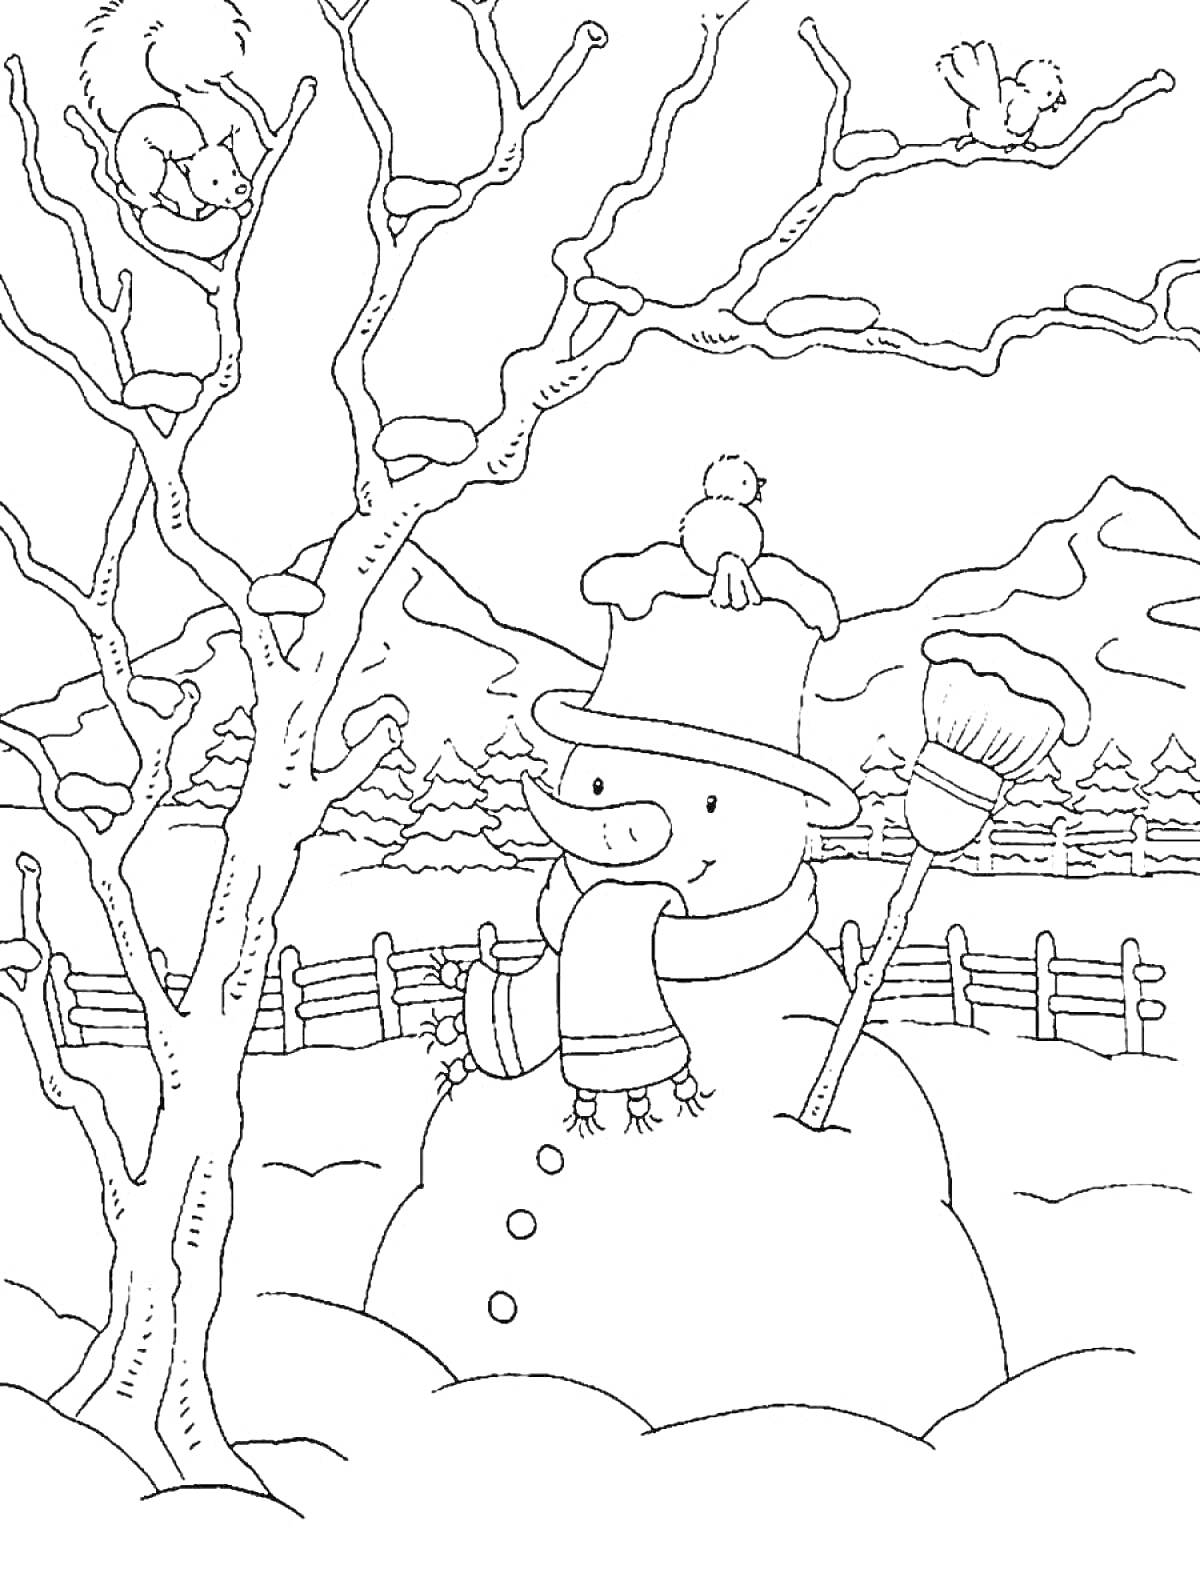 Раскраска Снеговик с метлой поддеревом, птицы на ветках, забор и горы на заднем плане